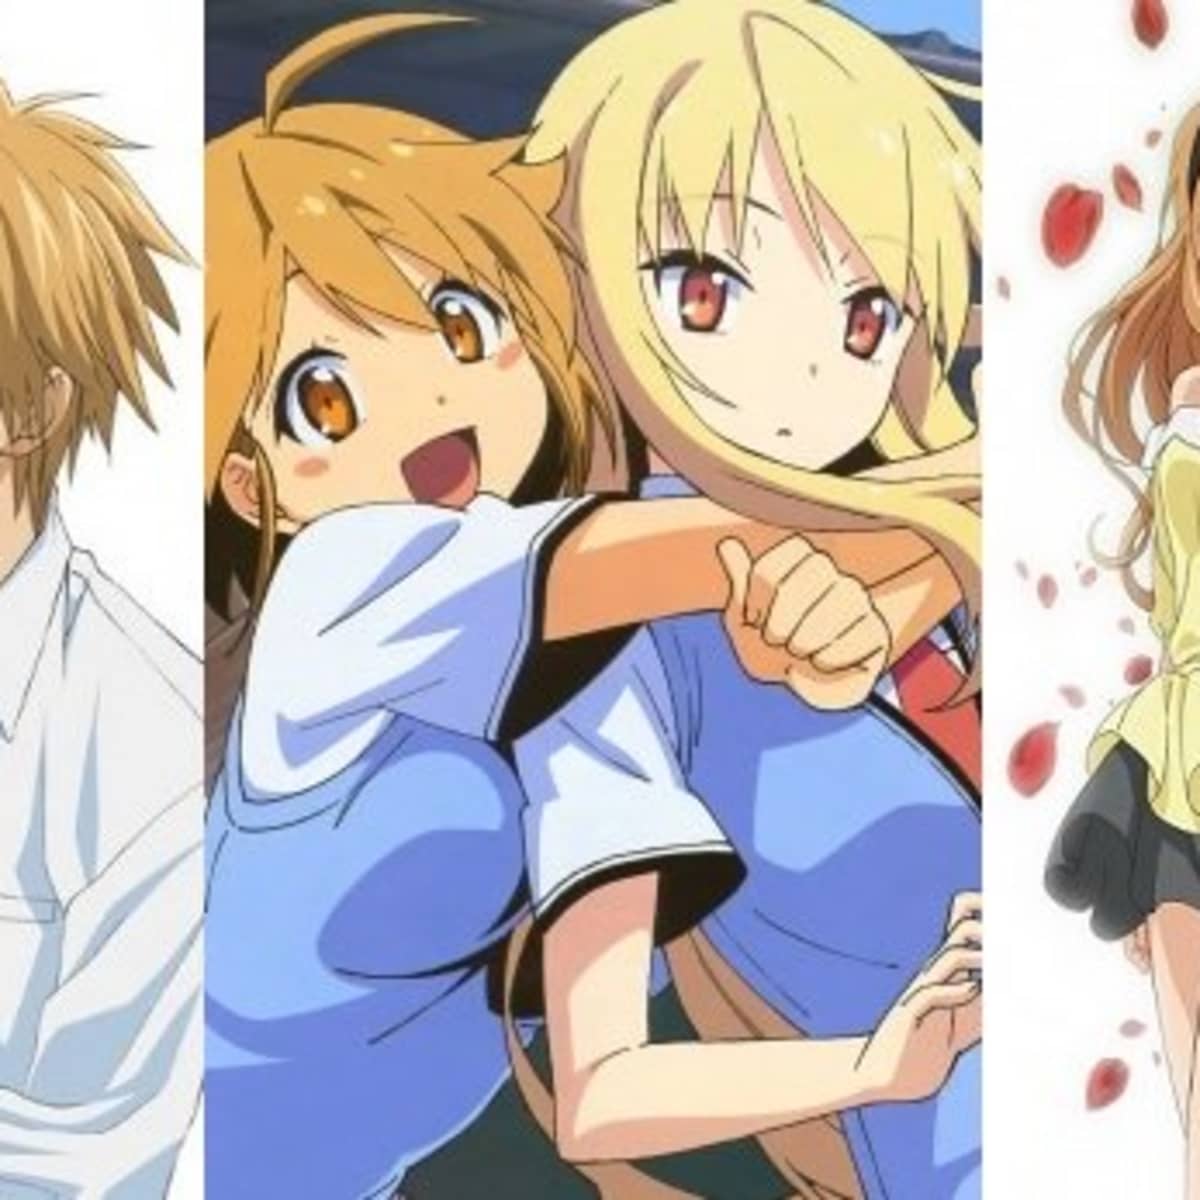 best romance anime movies